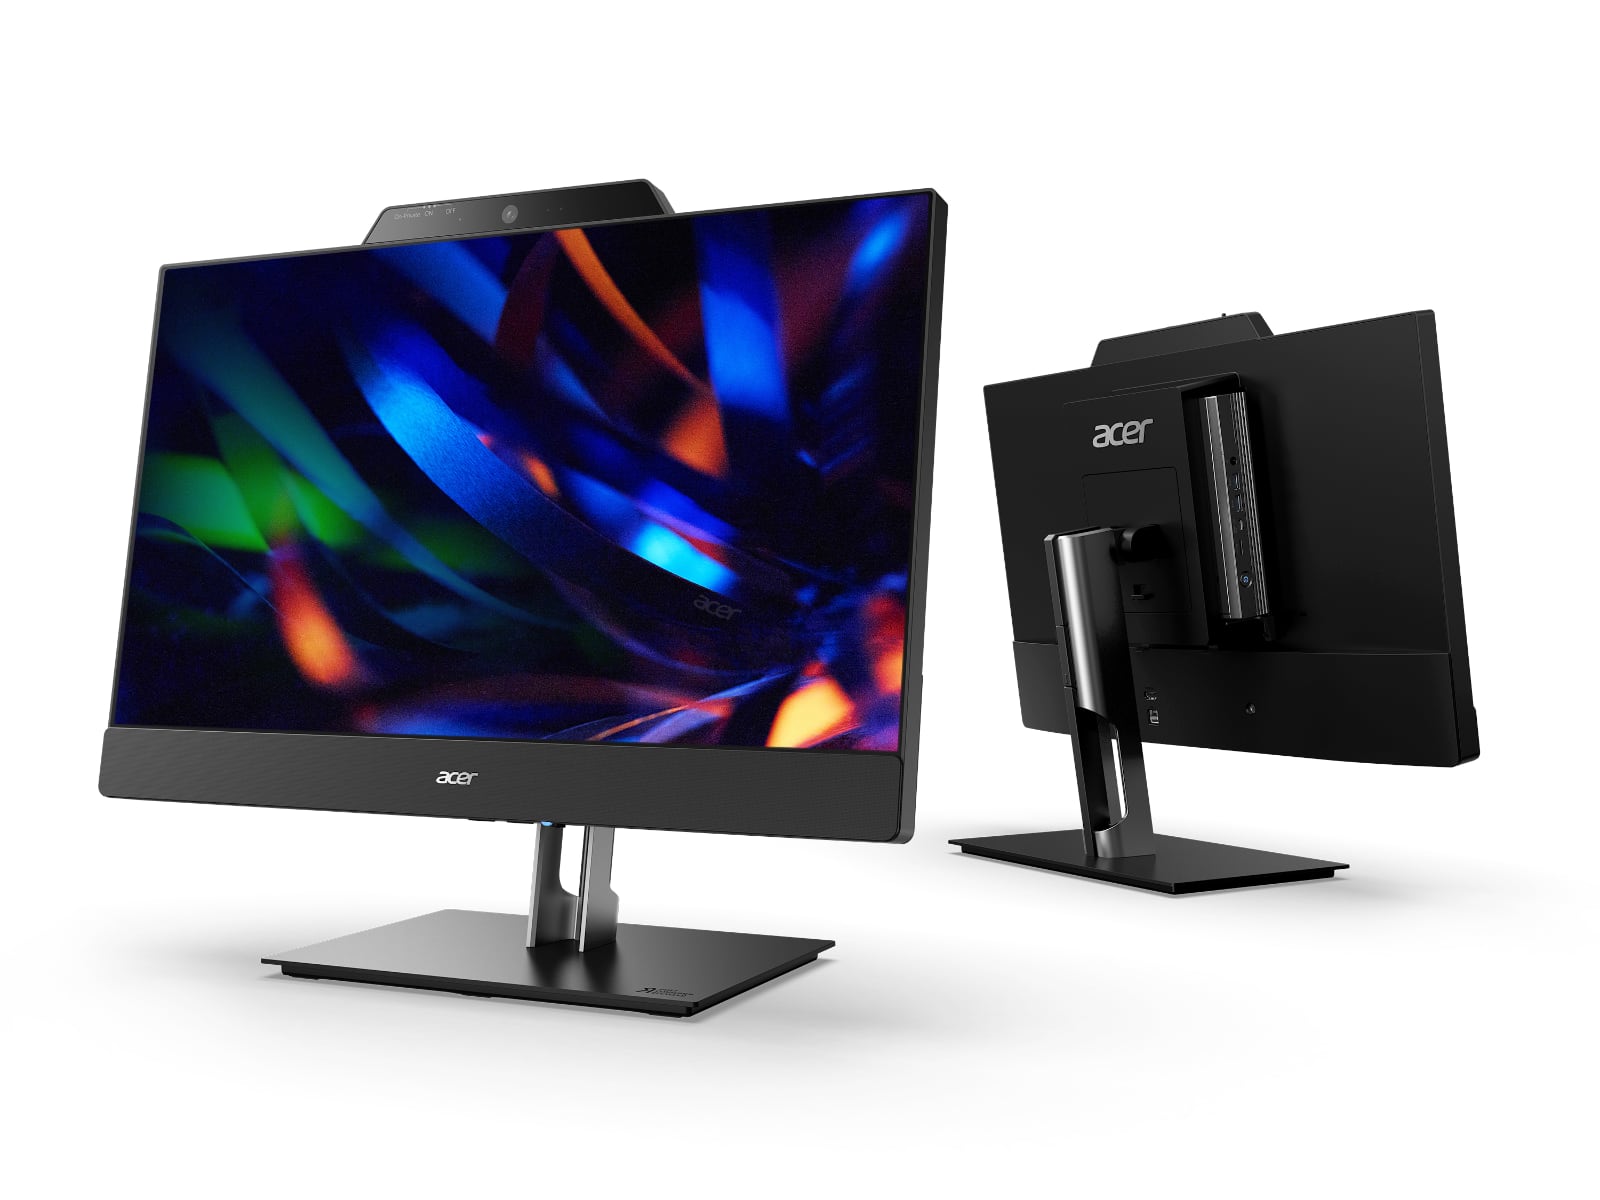 Acer añade un monitor FHD 1080p de 24 pulgadas al nuevo Chromebox CXI5 y crea la solución Add-In-One 24 por 610 dólares-3